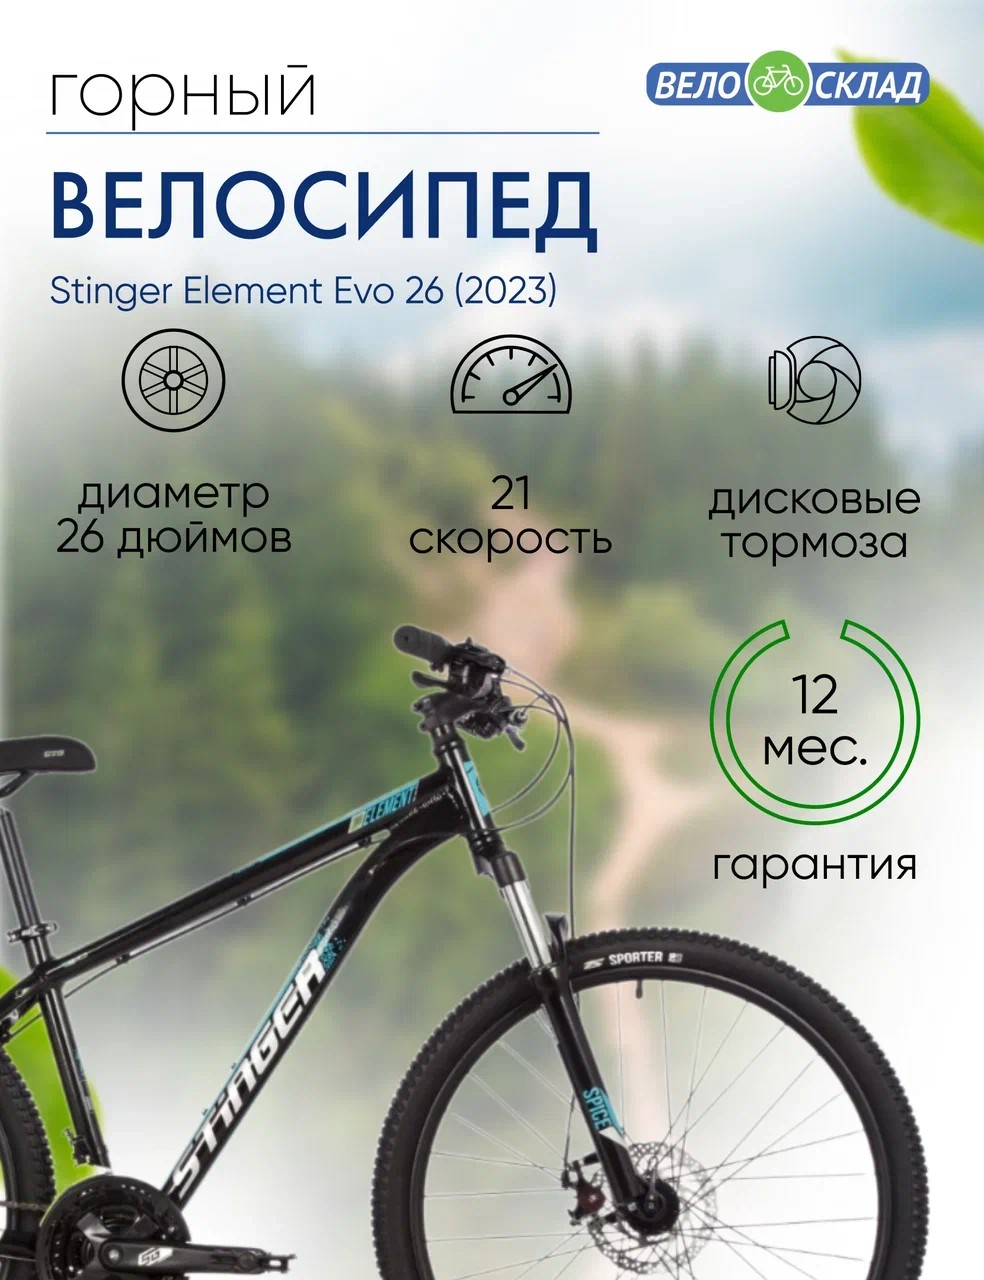 Горный велосипед Stinger Element Evo 26, год 2023, цвет Черный, ростовка 18